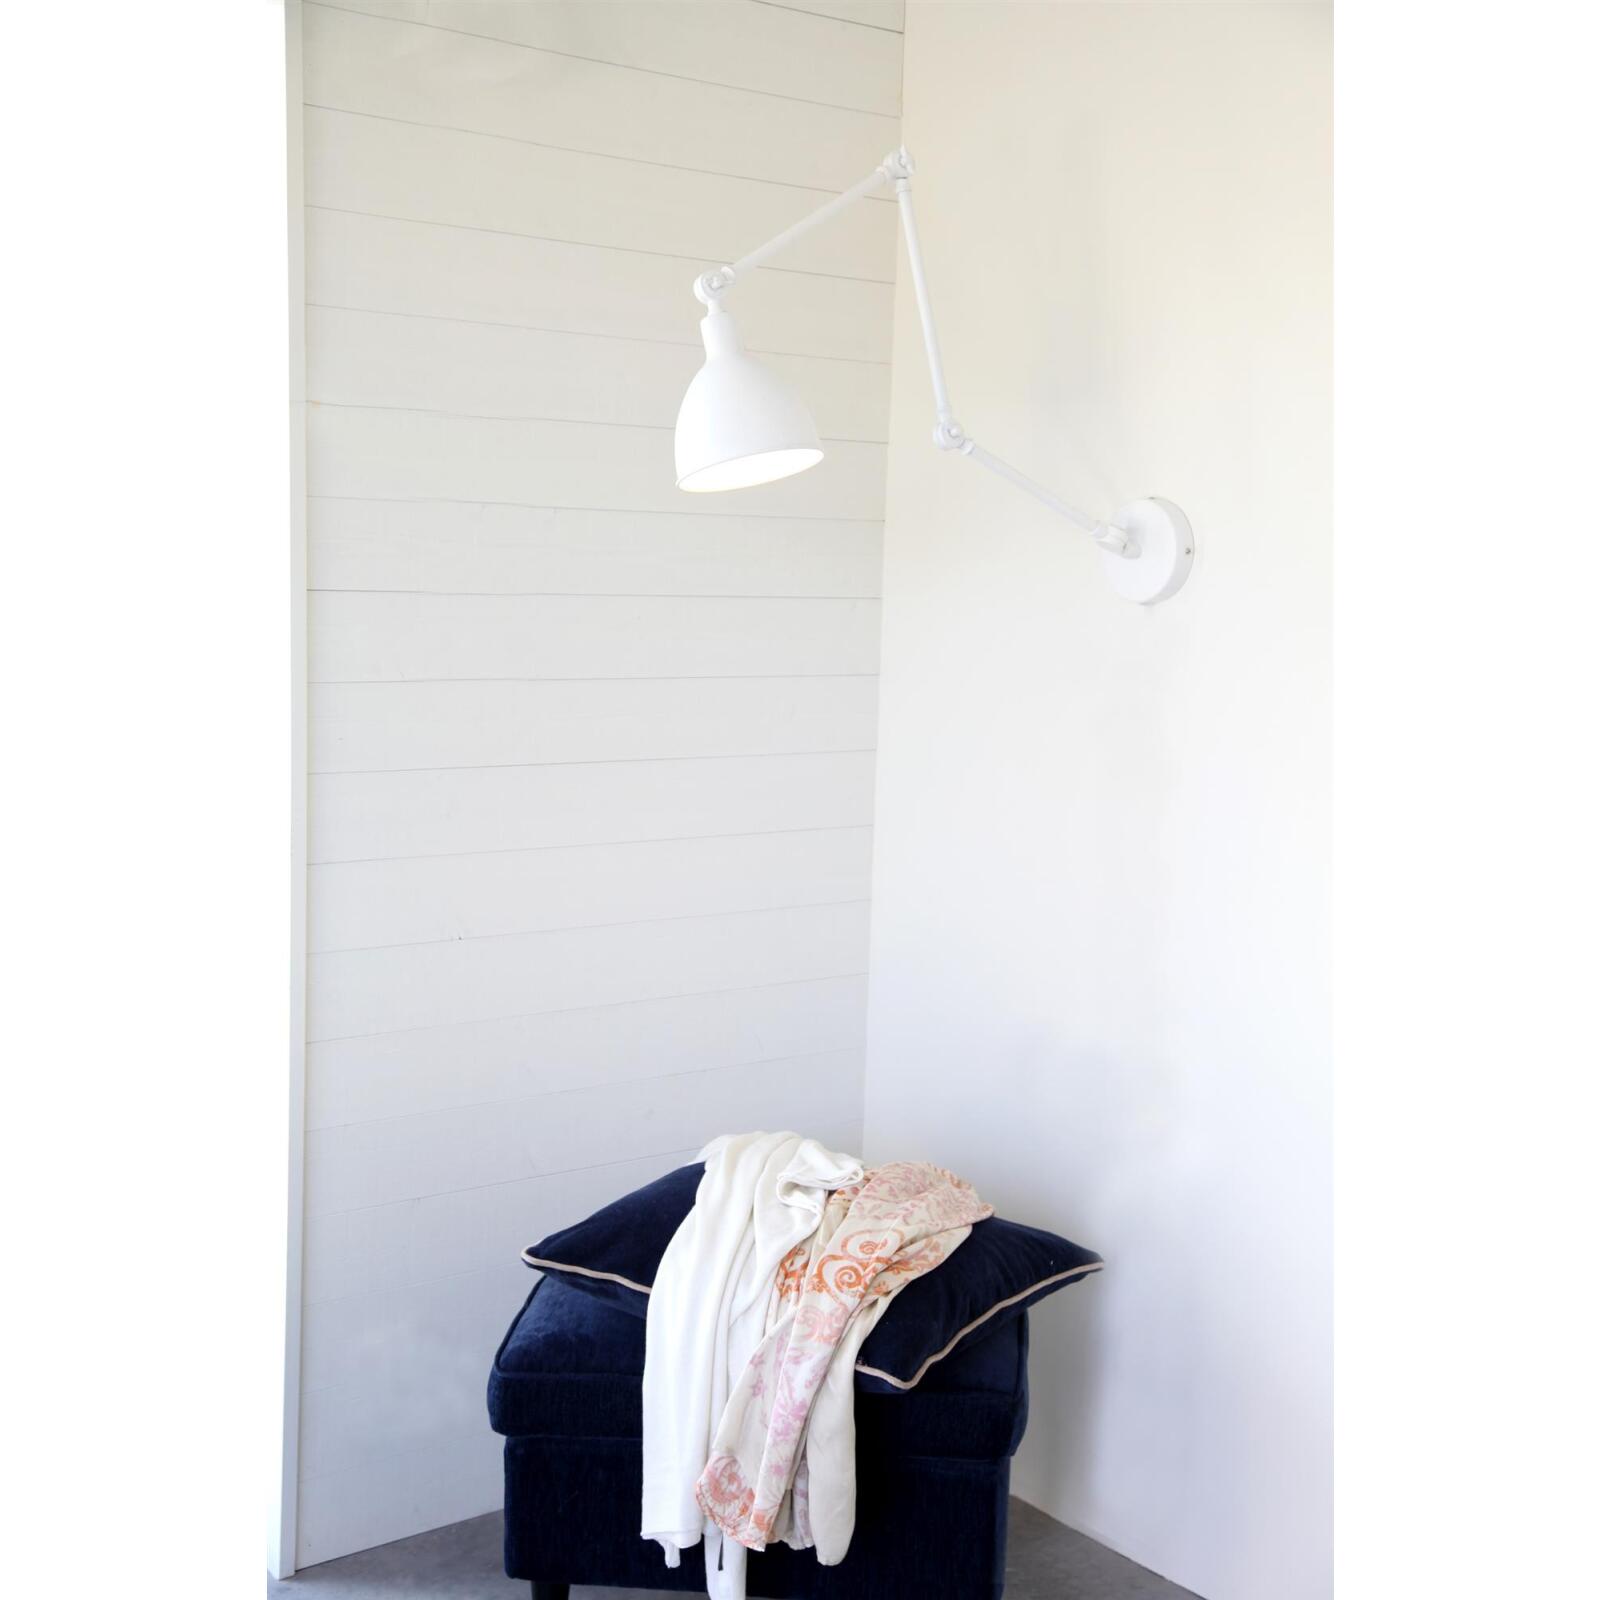 By Rydens verstellbare Wandleuchte Bazar weiß 122cm Länge E27 mit Schalter  - Lampen & Leuchten Onlineshop